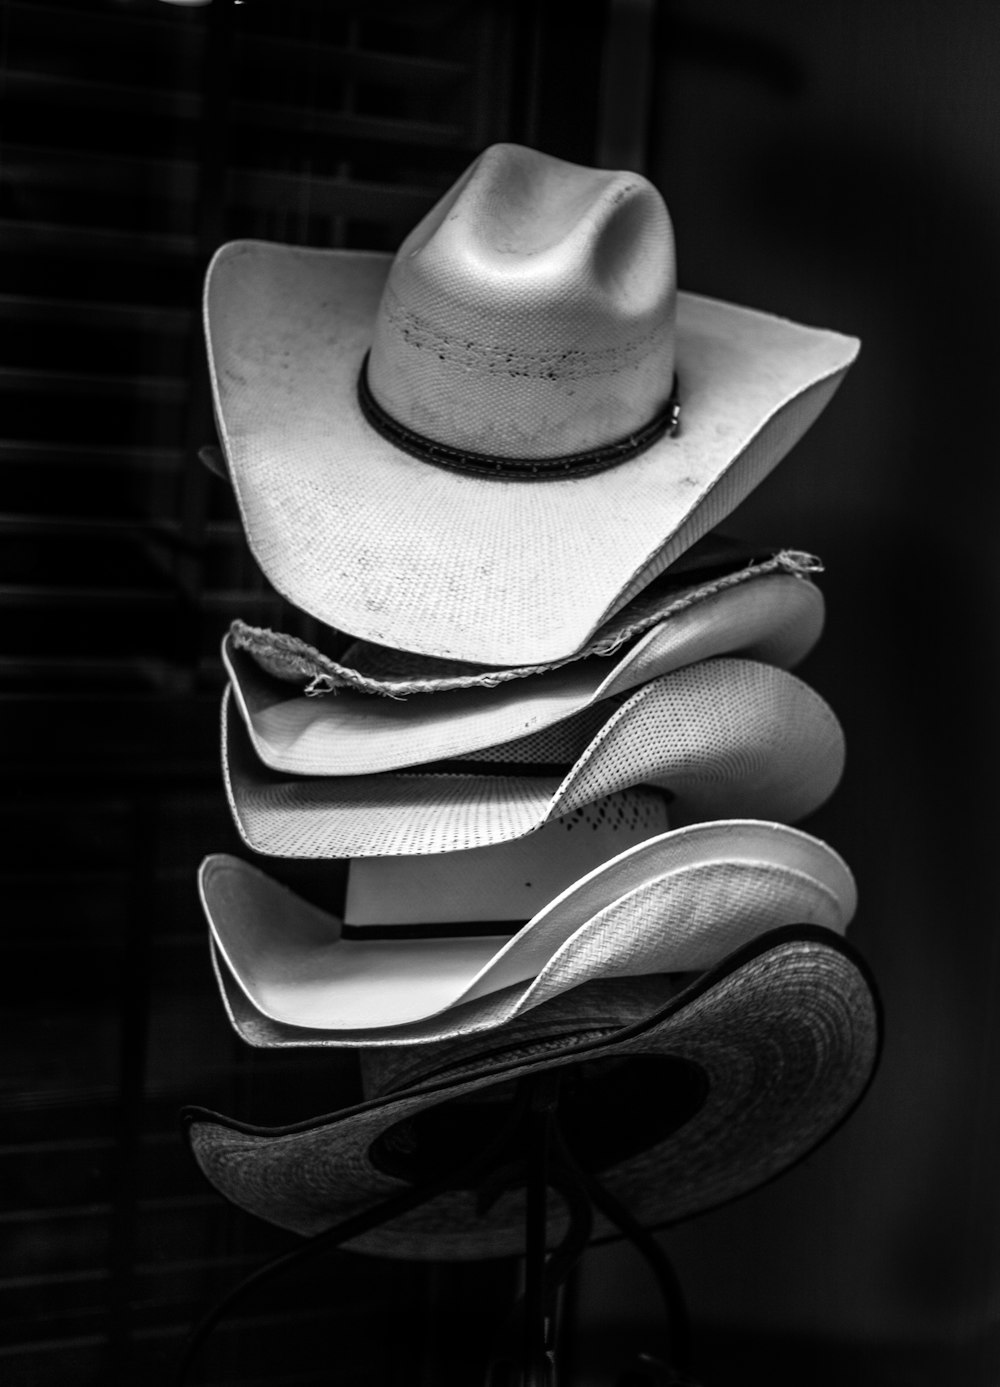 fotografia in scala di grigi di cappelli da cowboy impilati